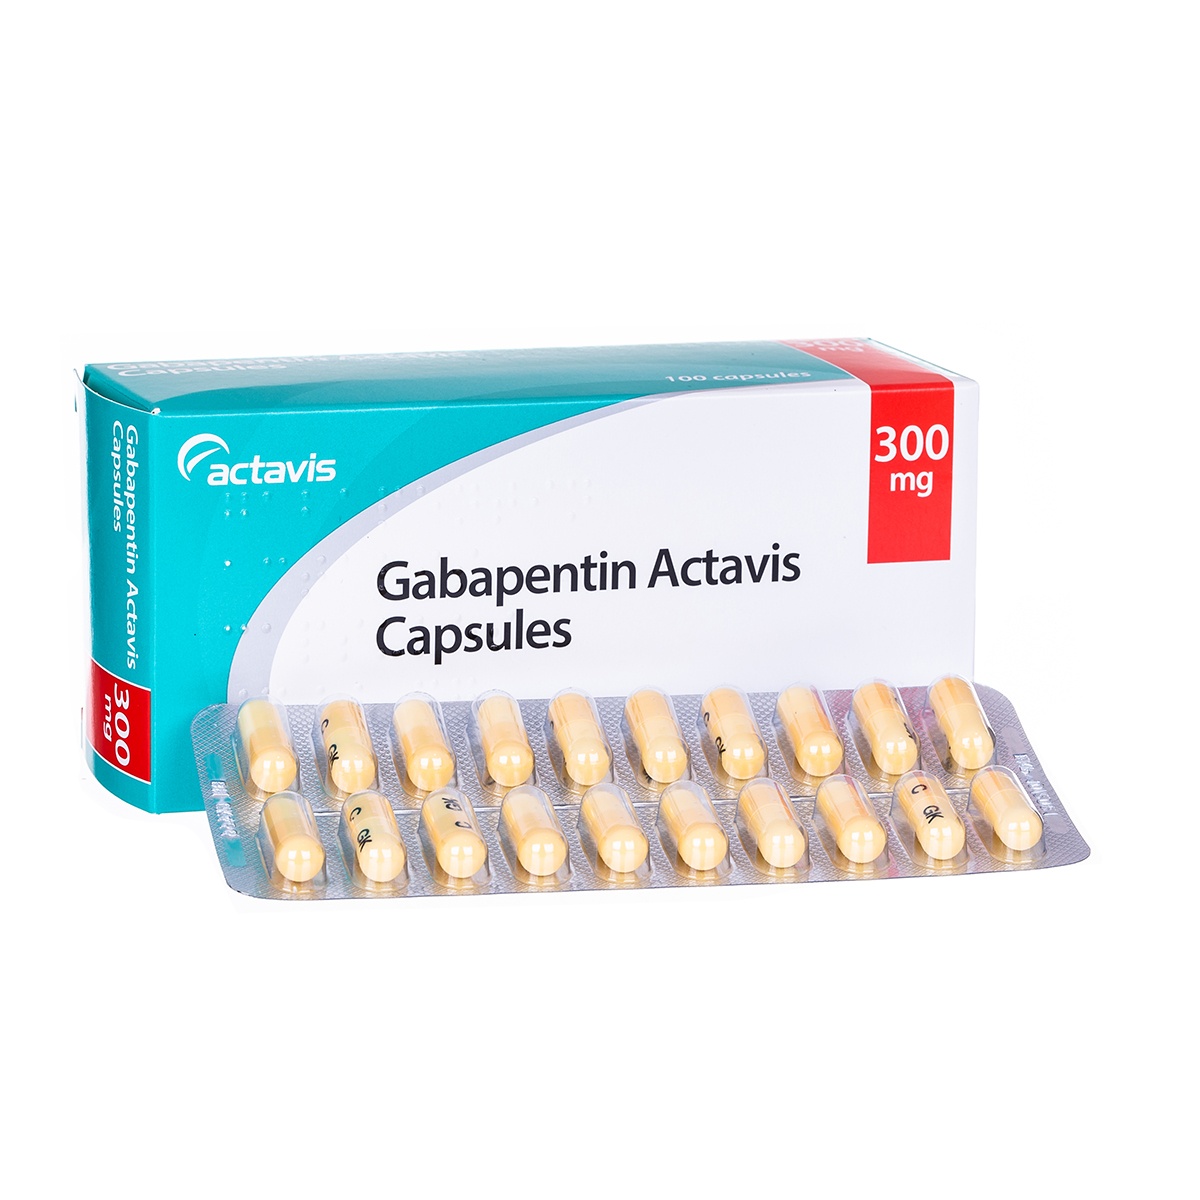 Gabapentin 300 mg